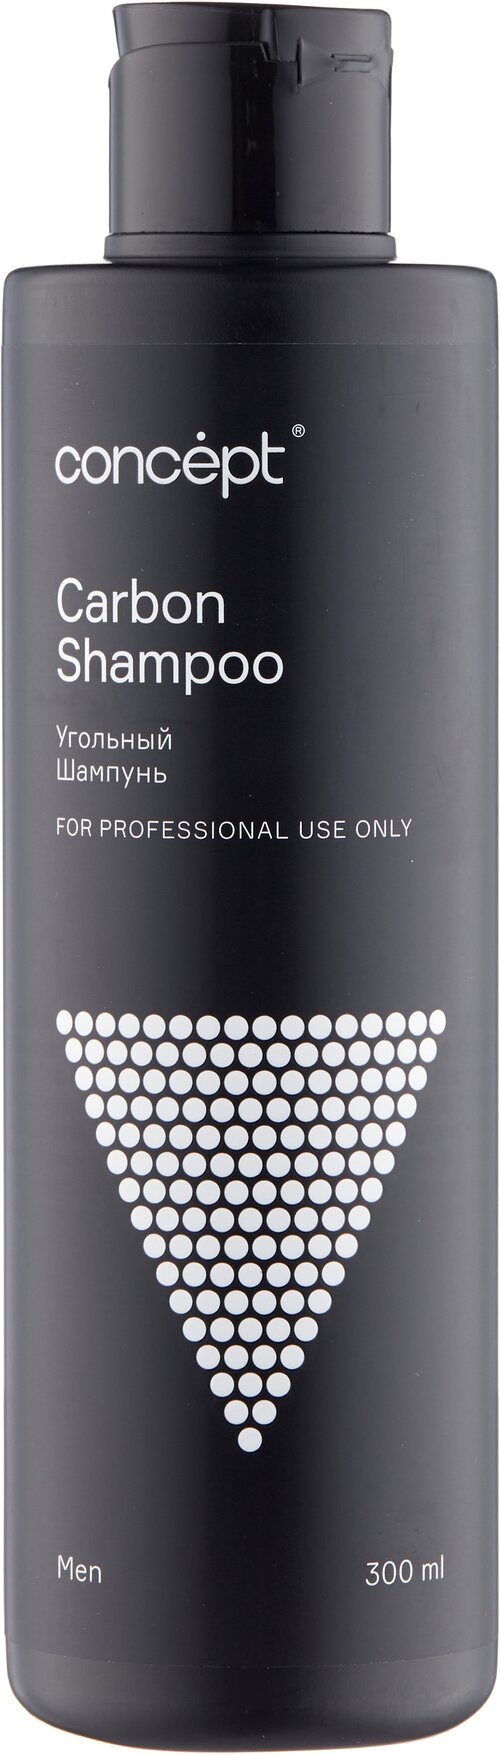 Concept Шампунь угольный Carbon Shampoo, 300 мл